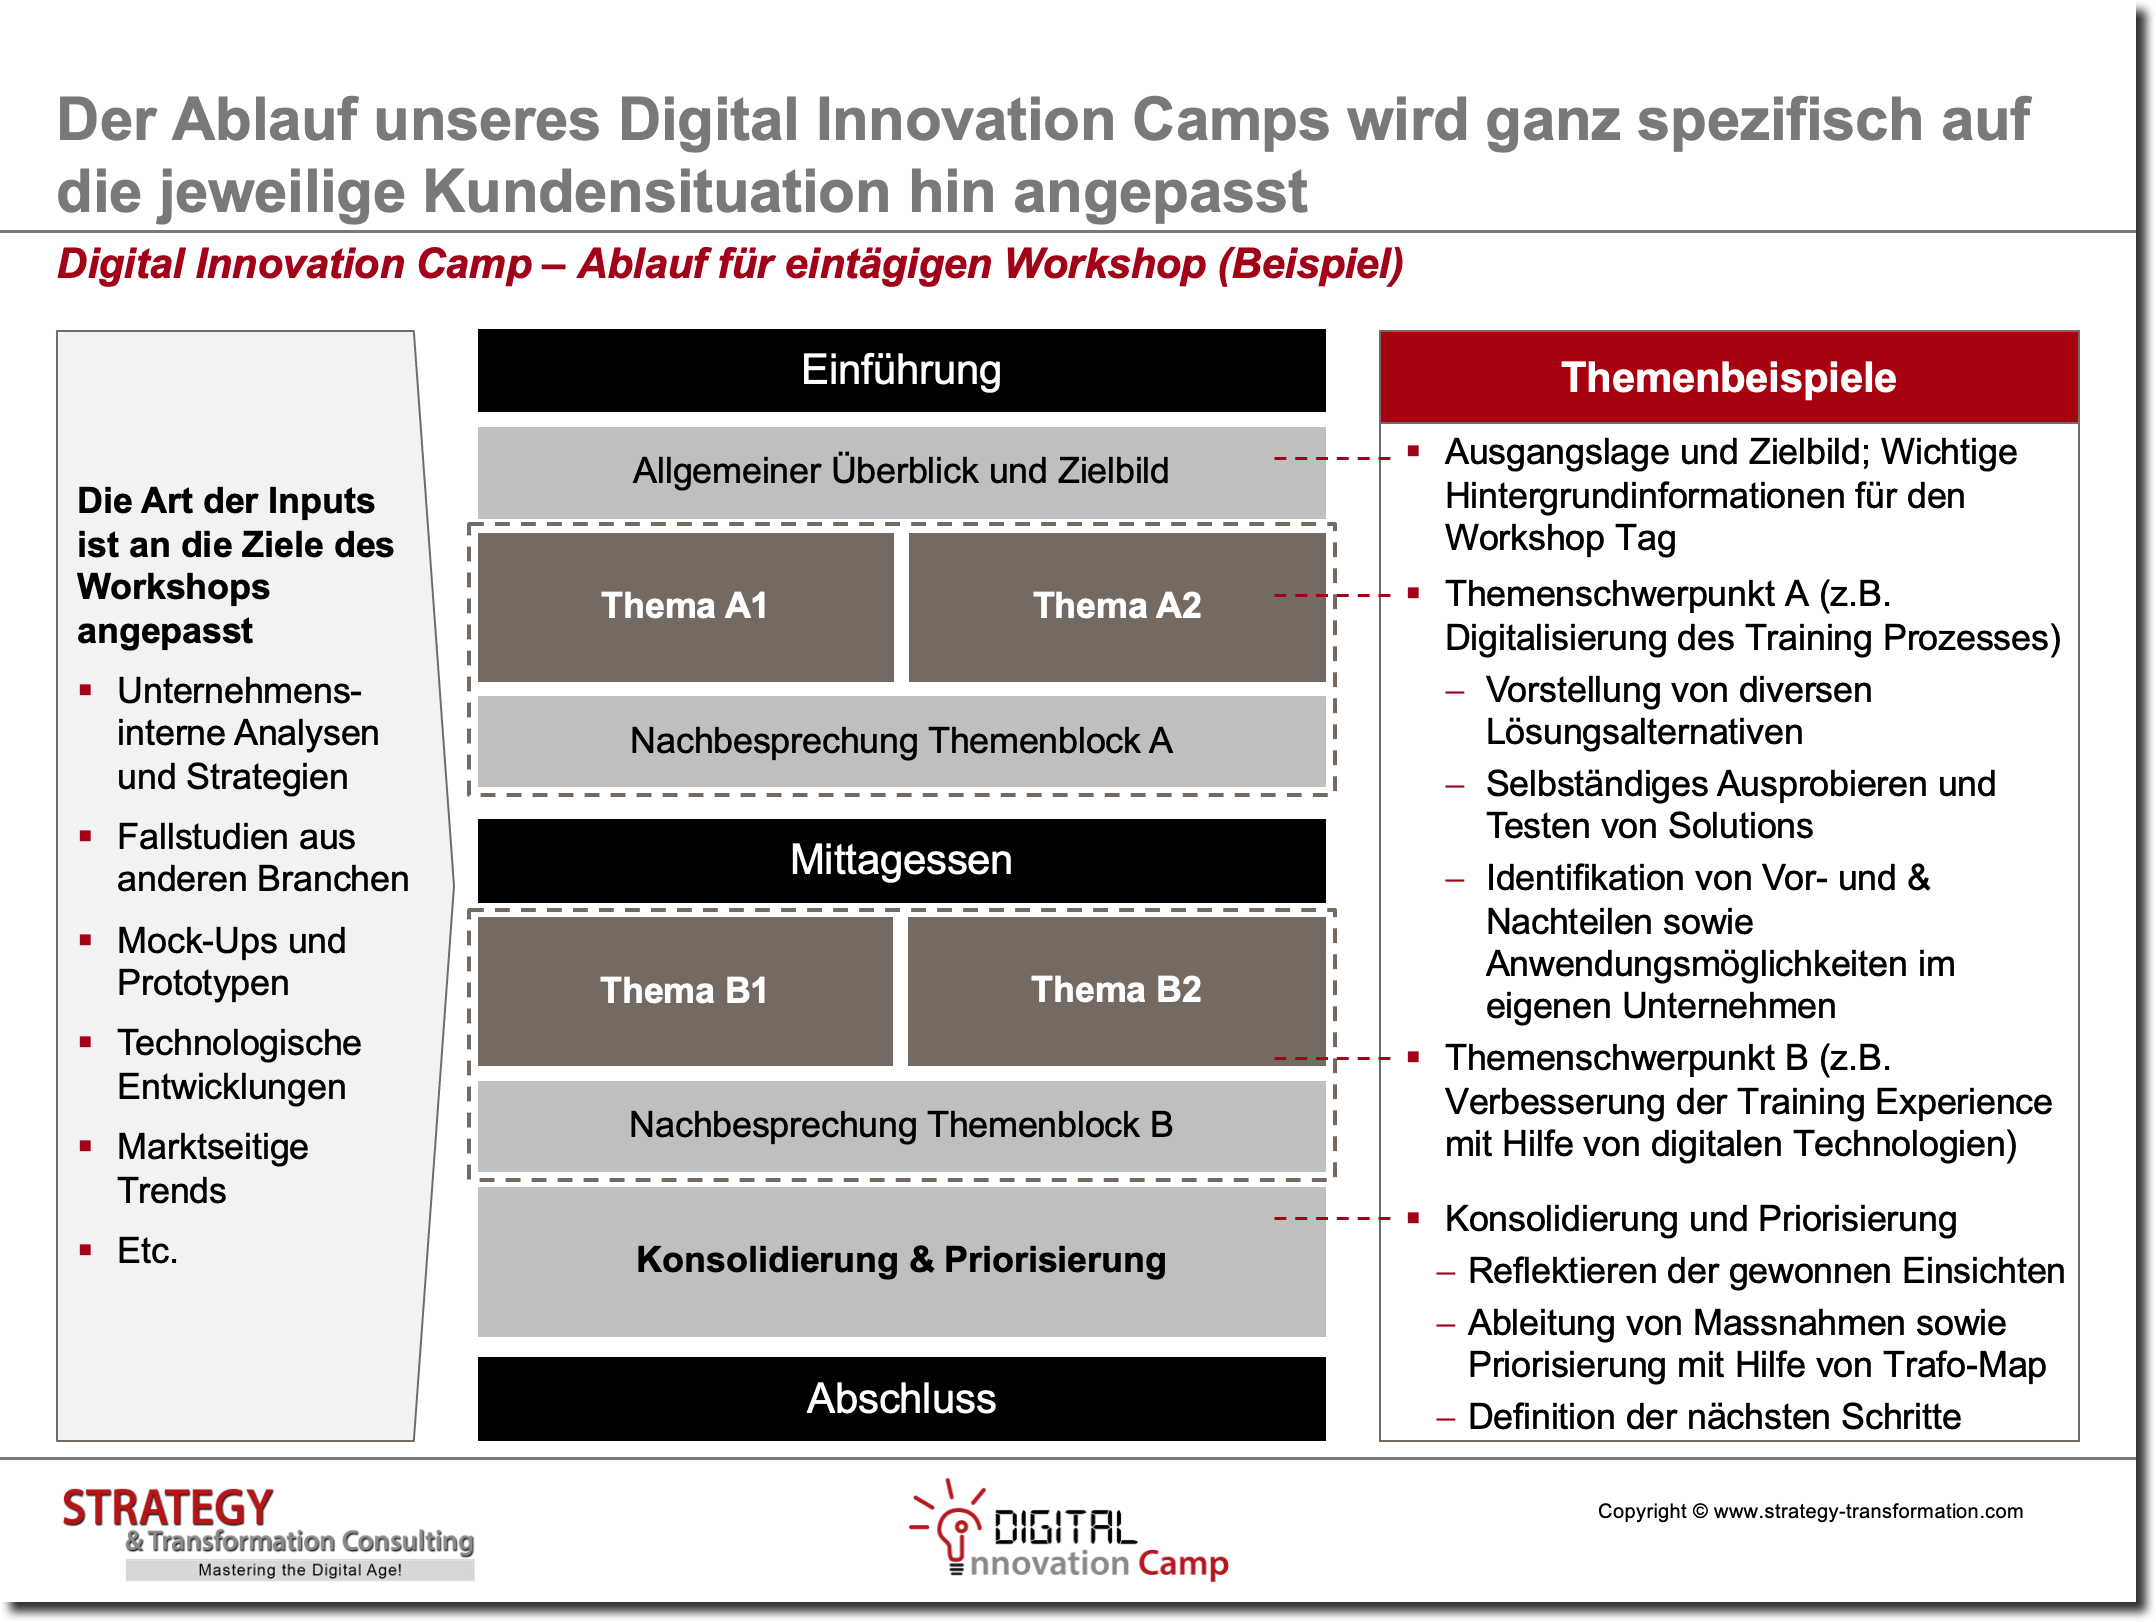 Digital Innovation Camp – Ablauf für eintägigen Workshop (Beispiel)